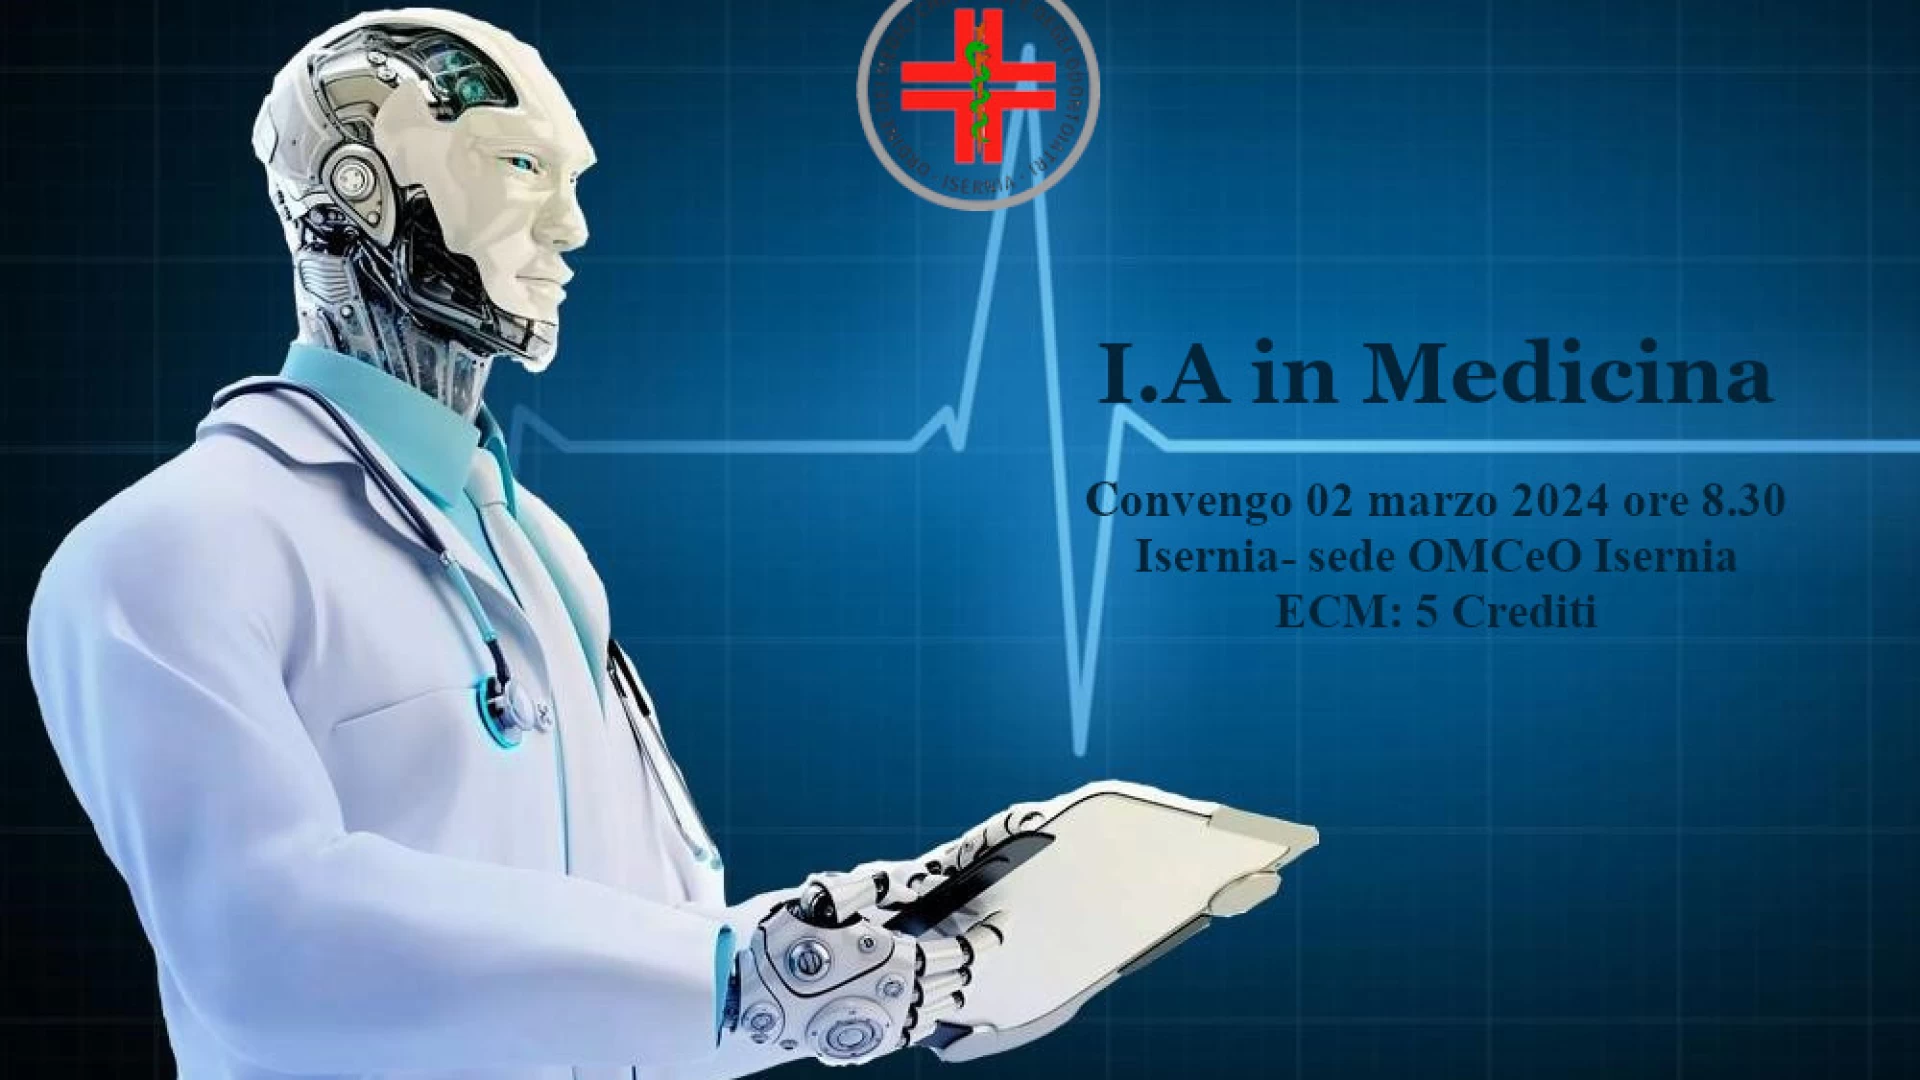 Isernia: intelligenza artificiale nel campo medico, interessante convegno promosso dall'Ordine dei Medici pentro.